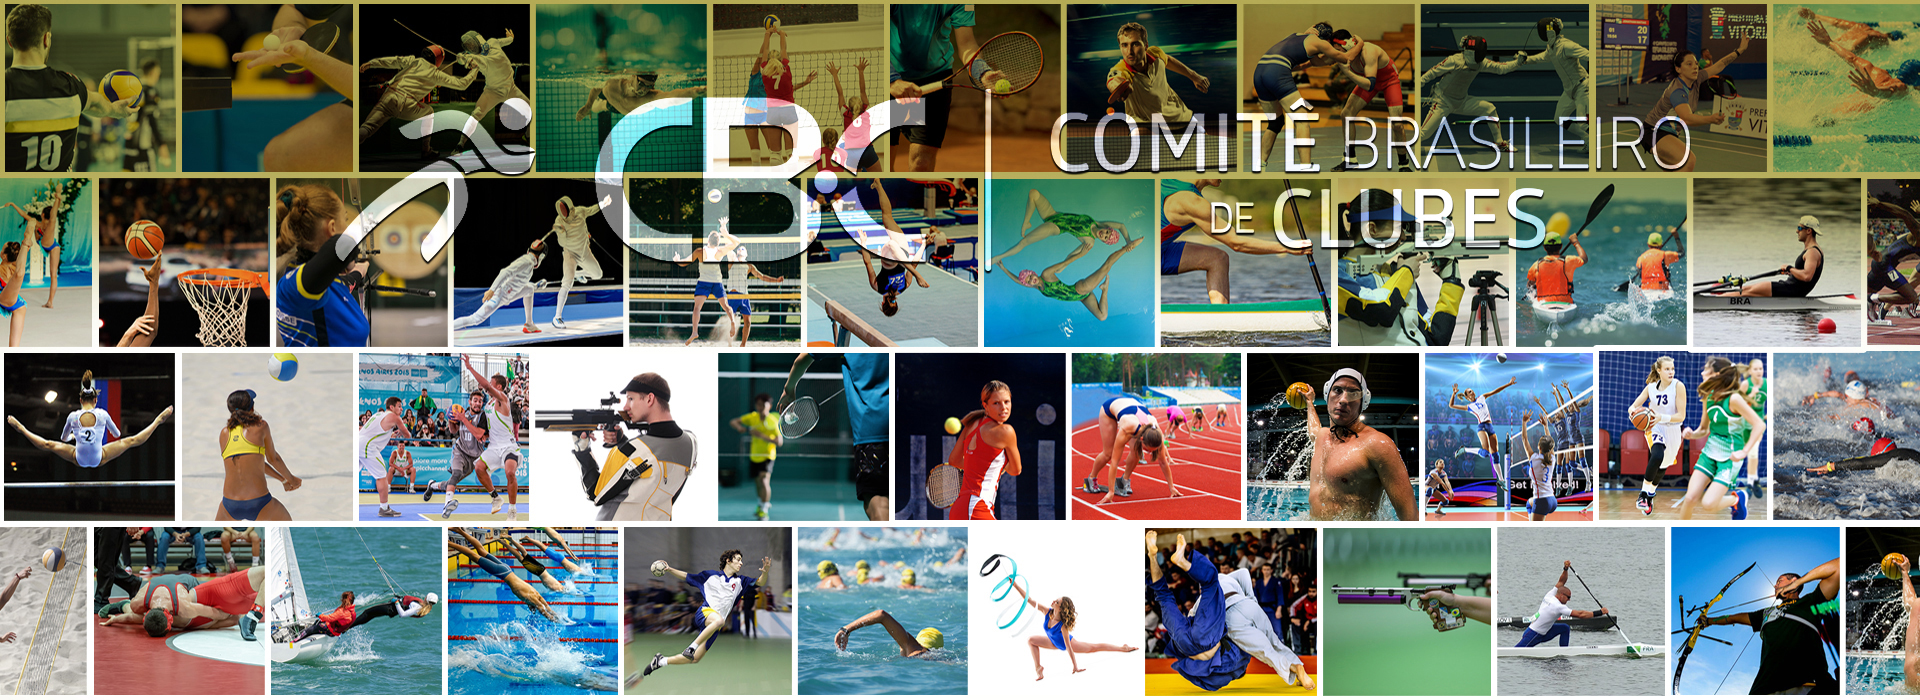 Comitê Brasileiro de Clubes-CBC oficializa esportes que terão apoio no segundo ano do Ciclo Olímpico 2021-2024